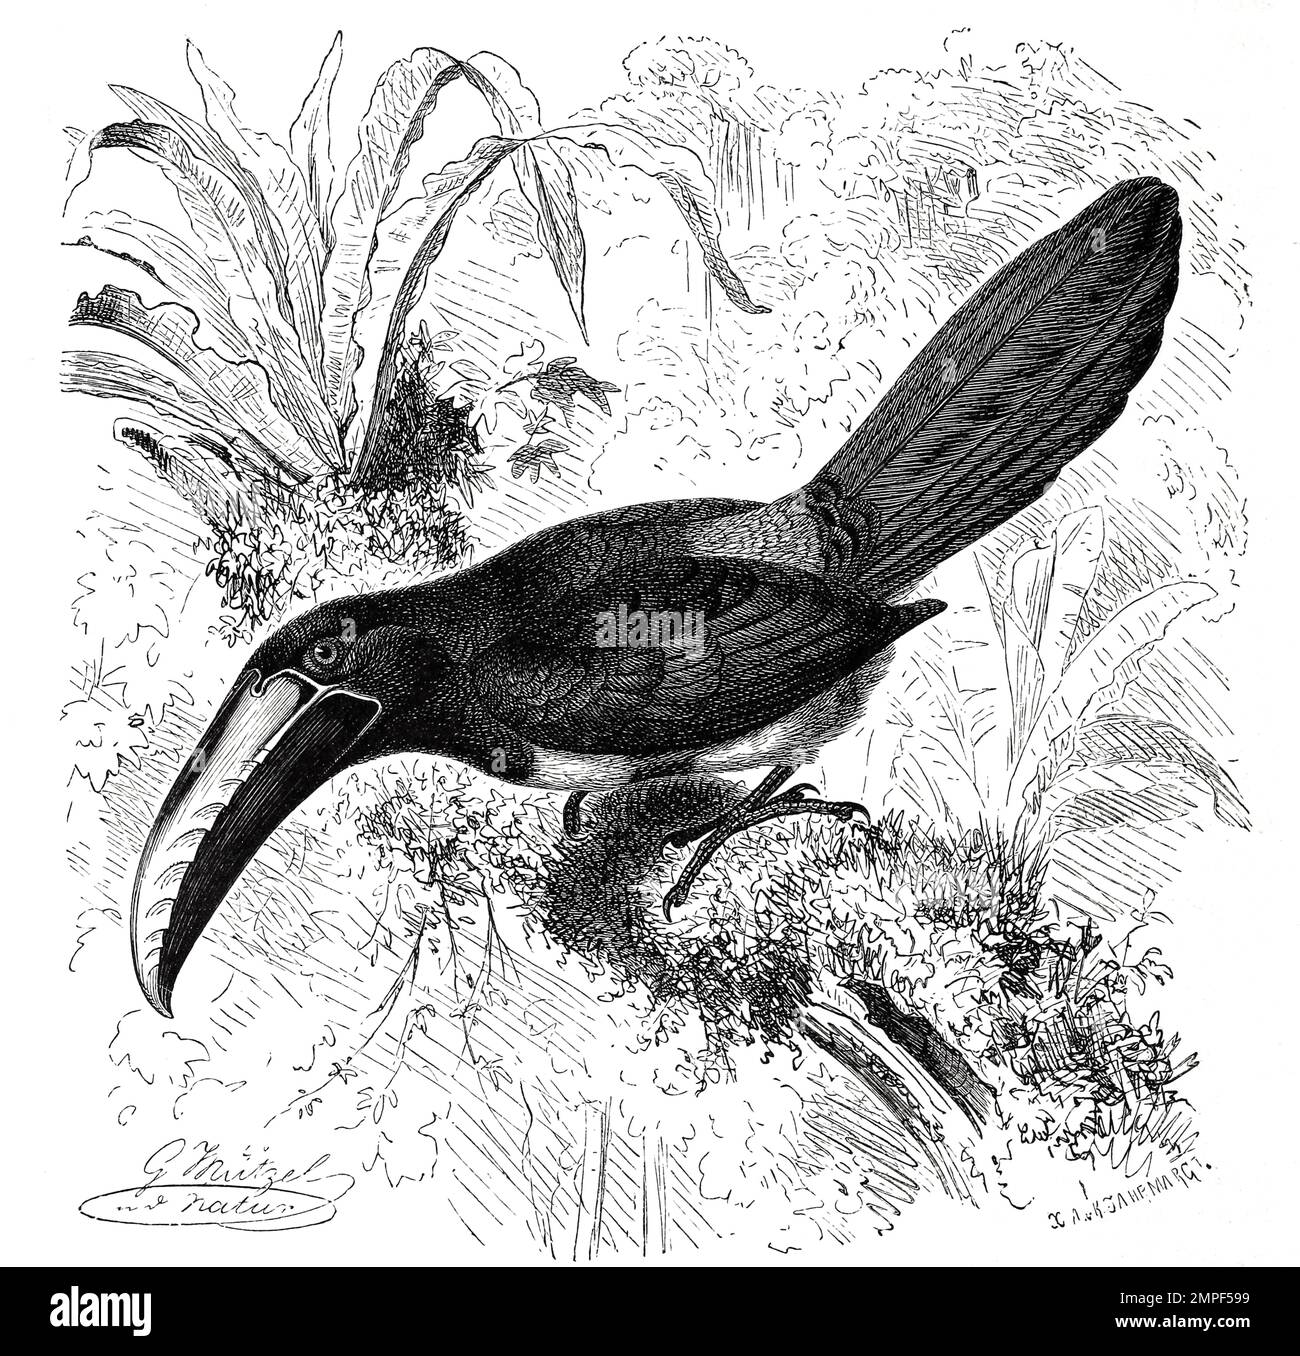 Vogel, Laucharassari, Aulacorhynchus prasinus ist ein in Mittel- und Südamerika beheimateter Spechtvogel aus der Familie der Tukane, Historisch, digital restaurierte Reproduktion von einer Vorlage aus dem 19. Jahrhundert Stock Photo